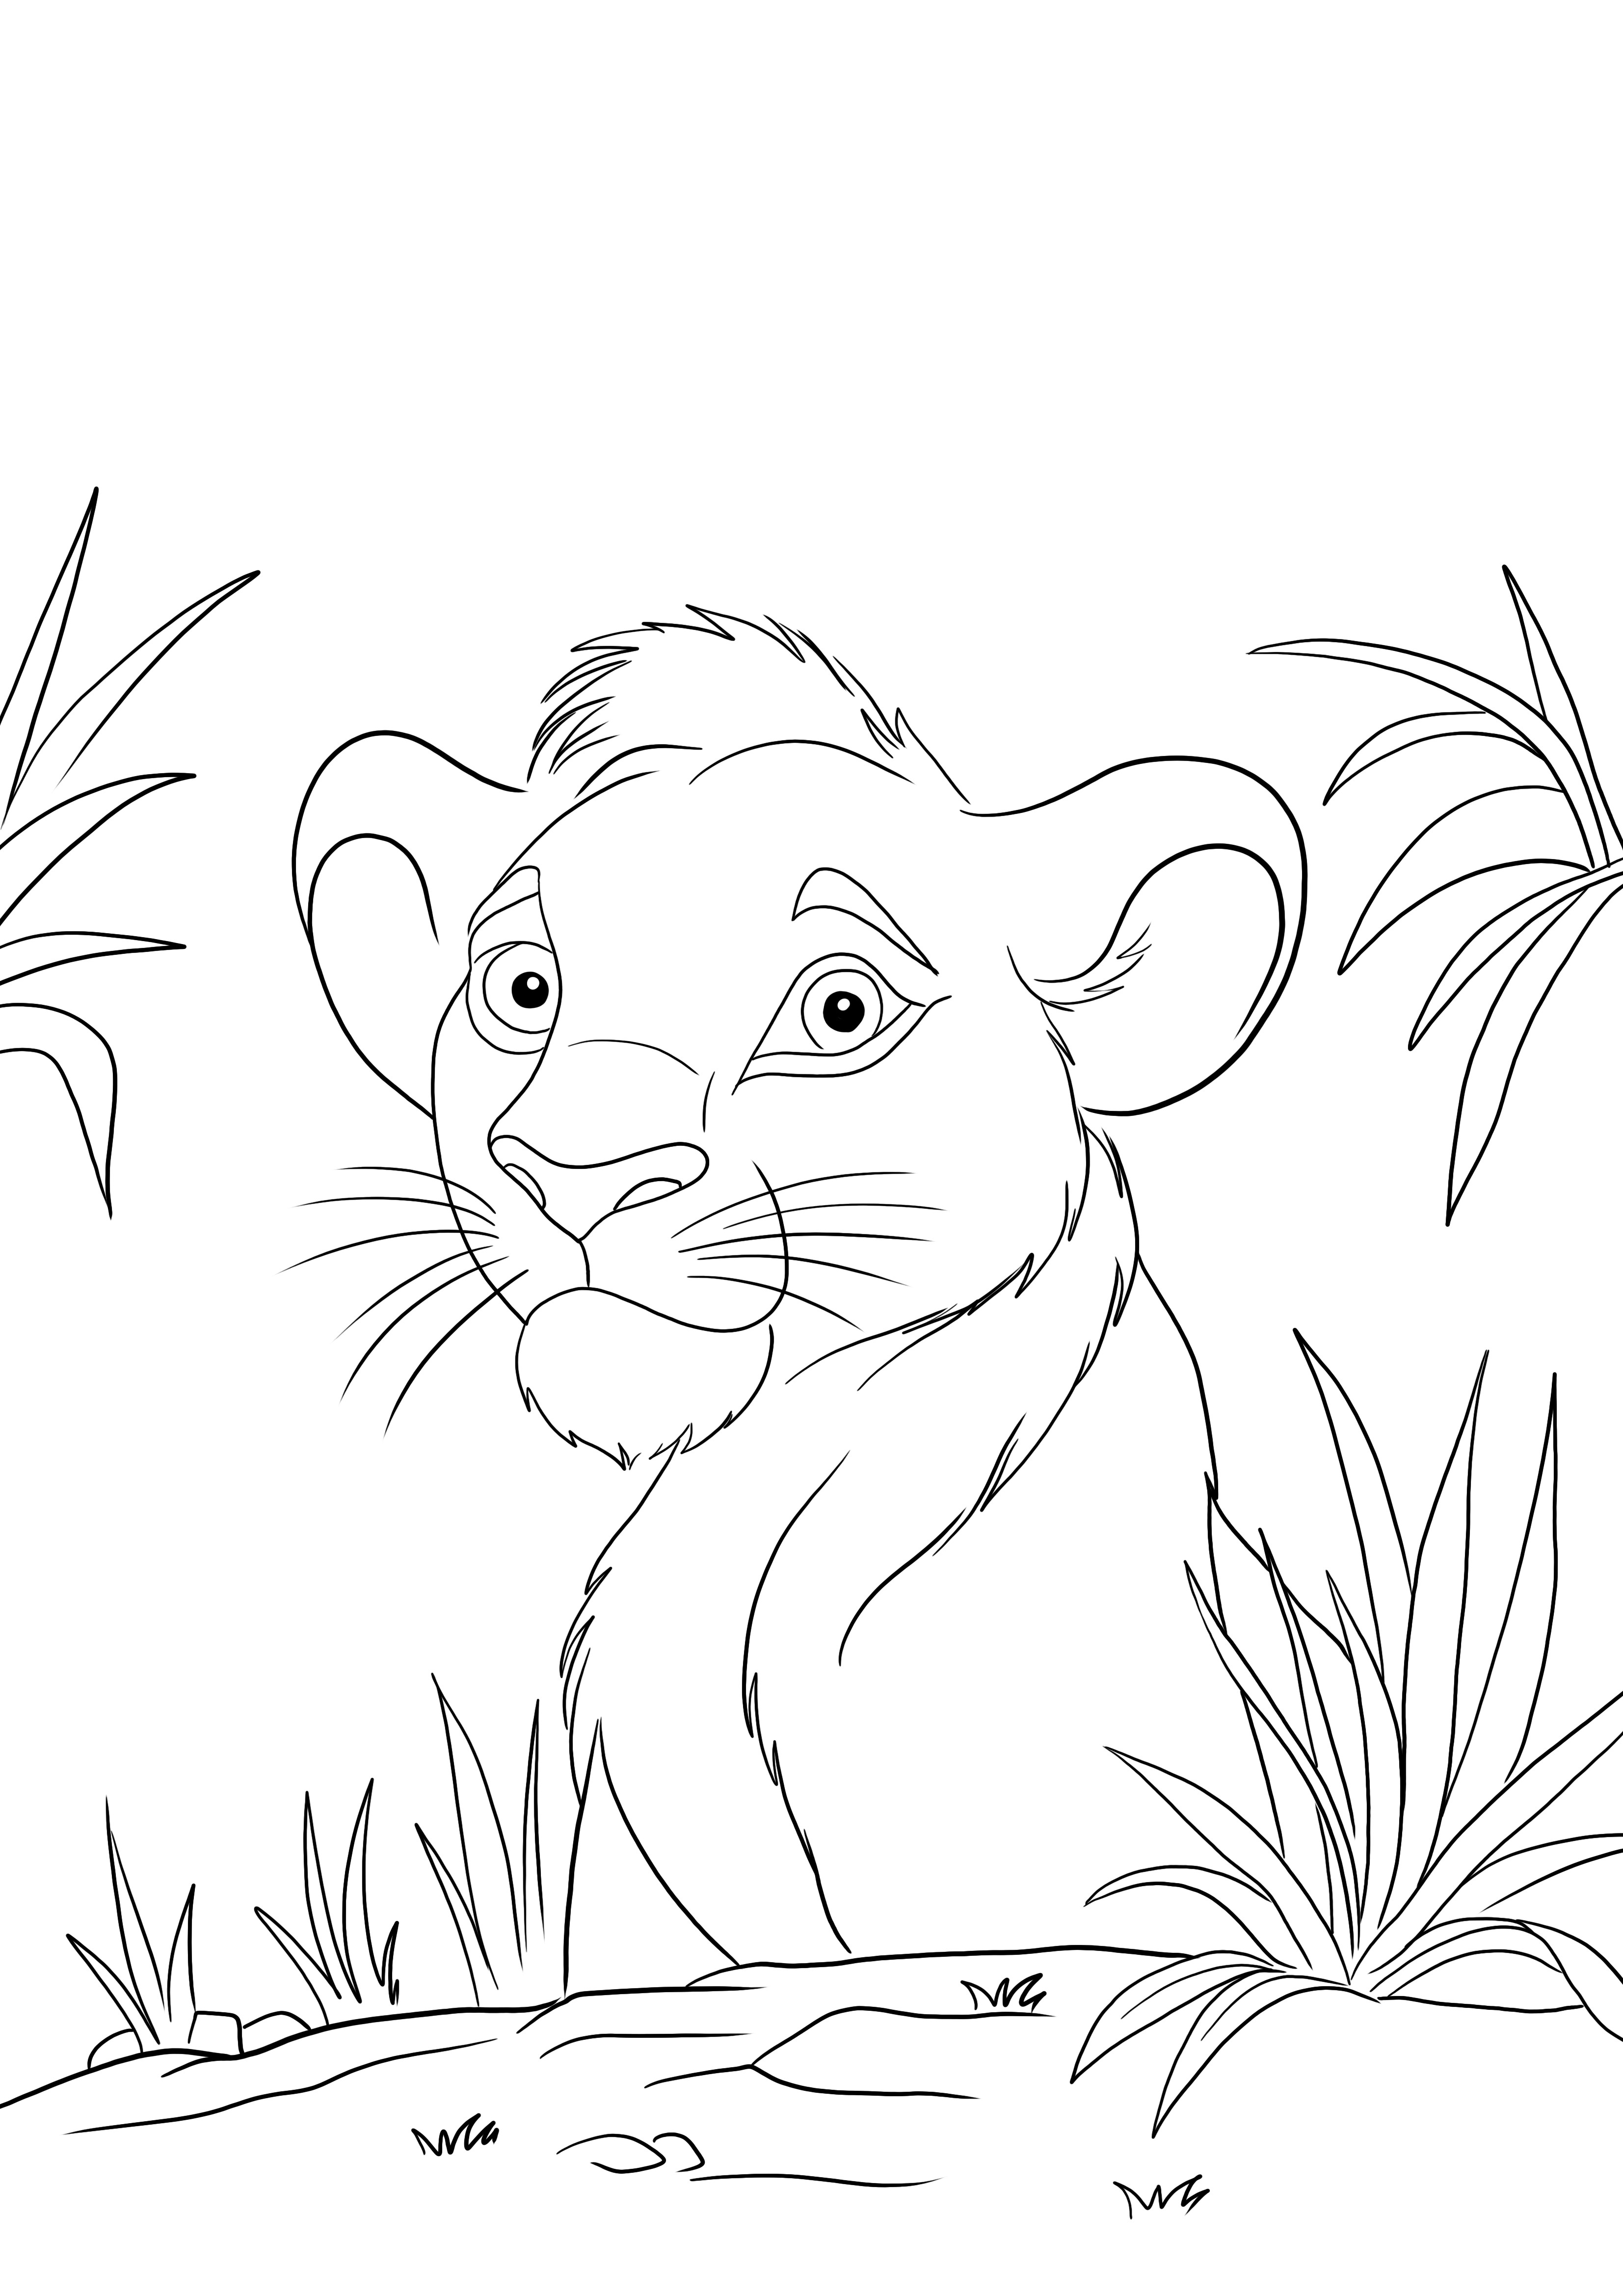 Simba z Króla Lwa łatwe kolorowanie i darmowy arkusz do wydrukowania